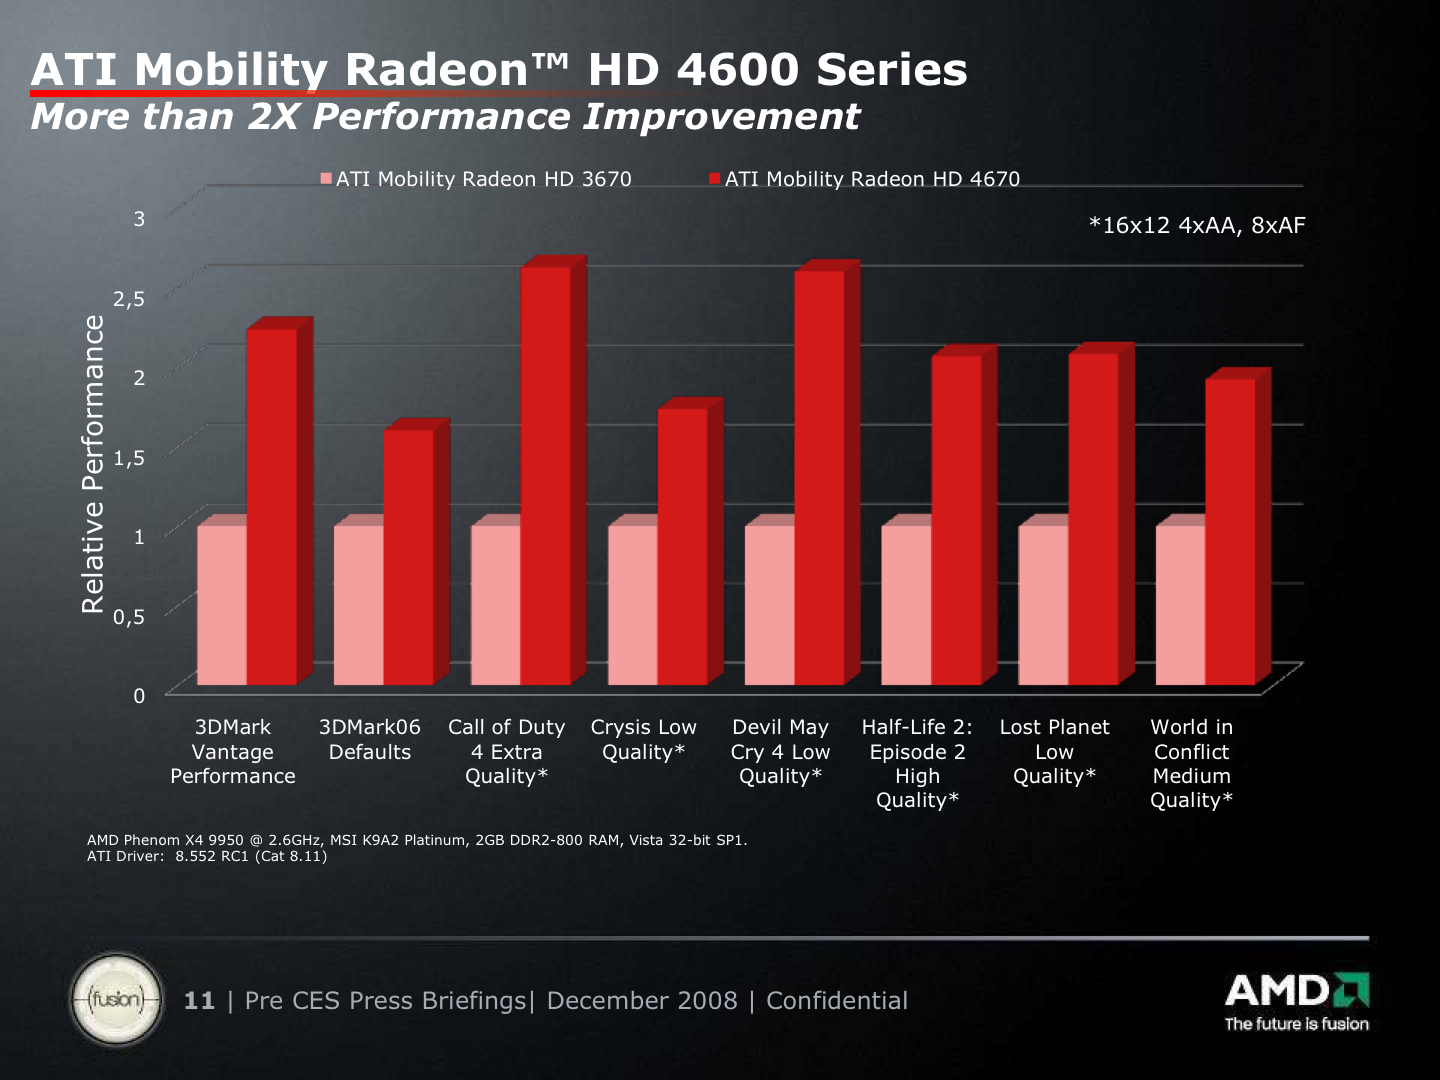 AMD ATI Mobility Radeon HD 4670 